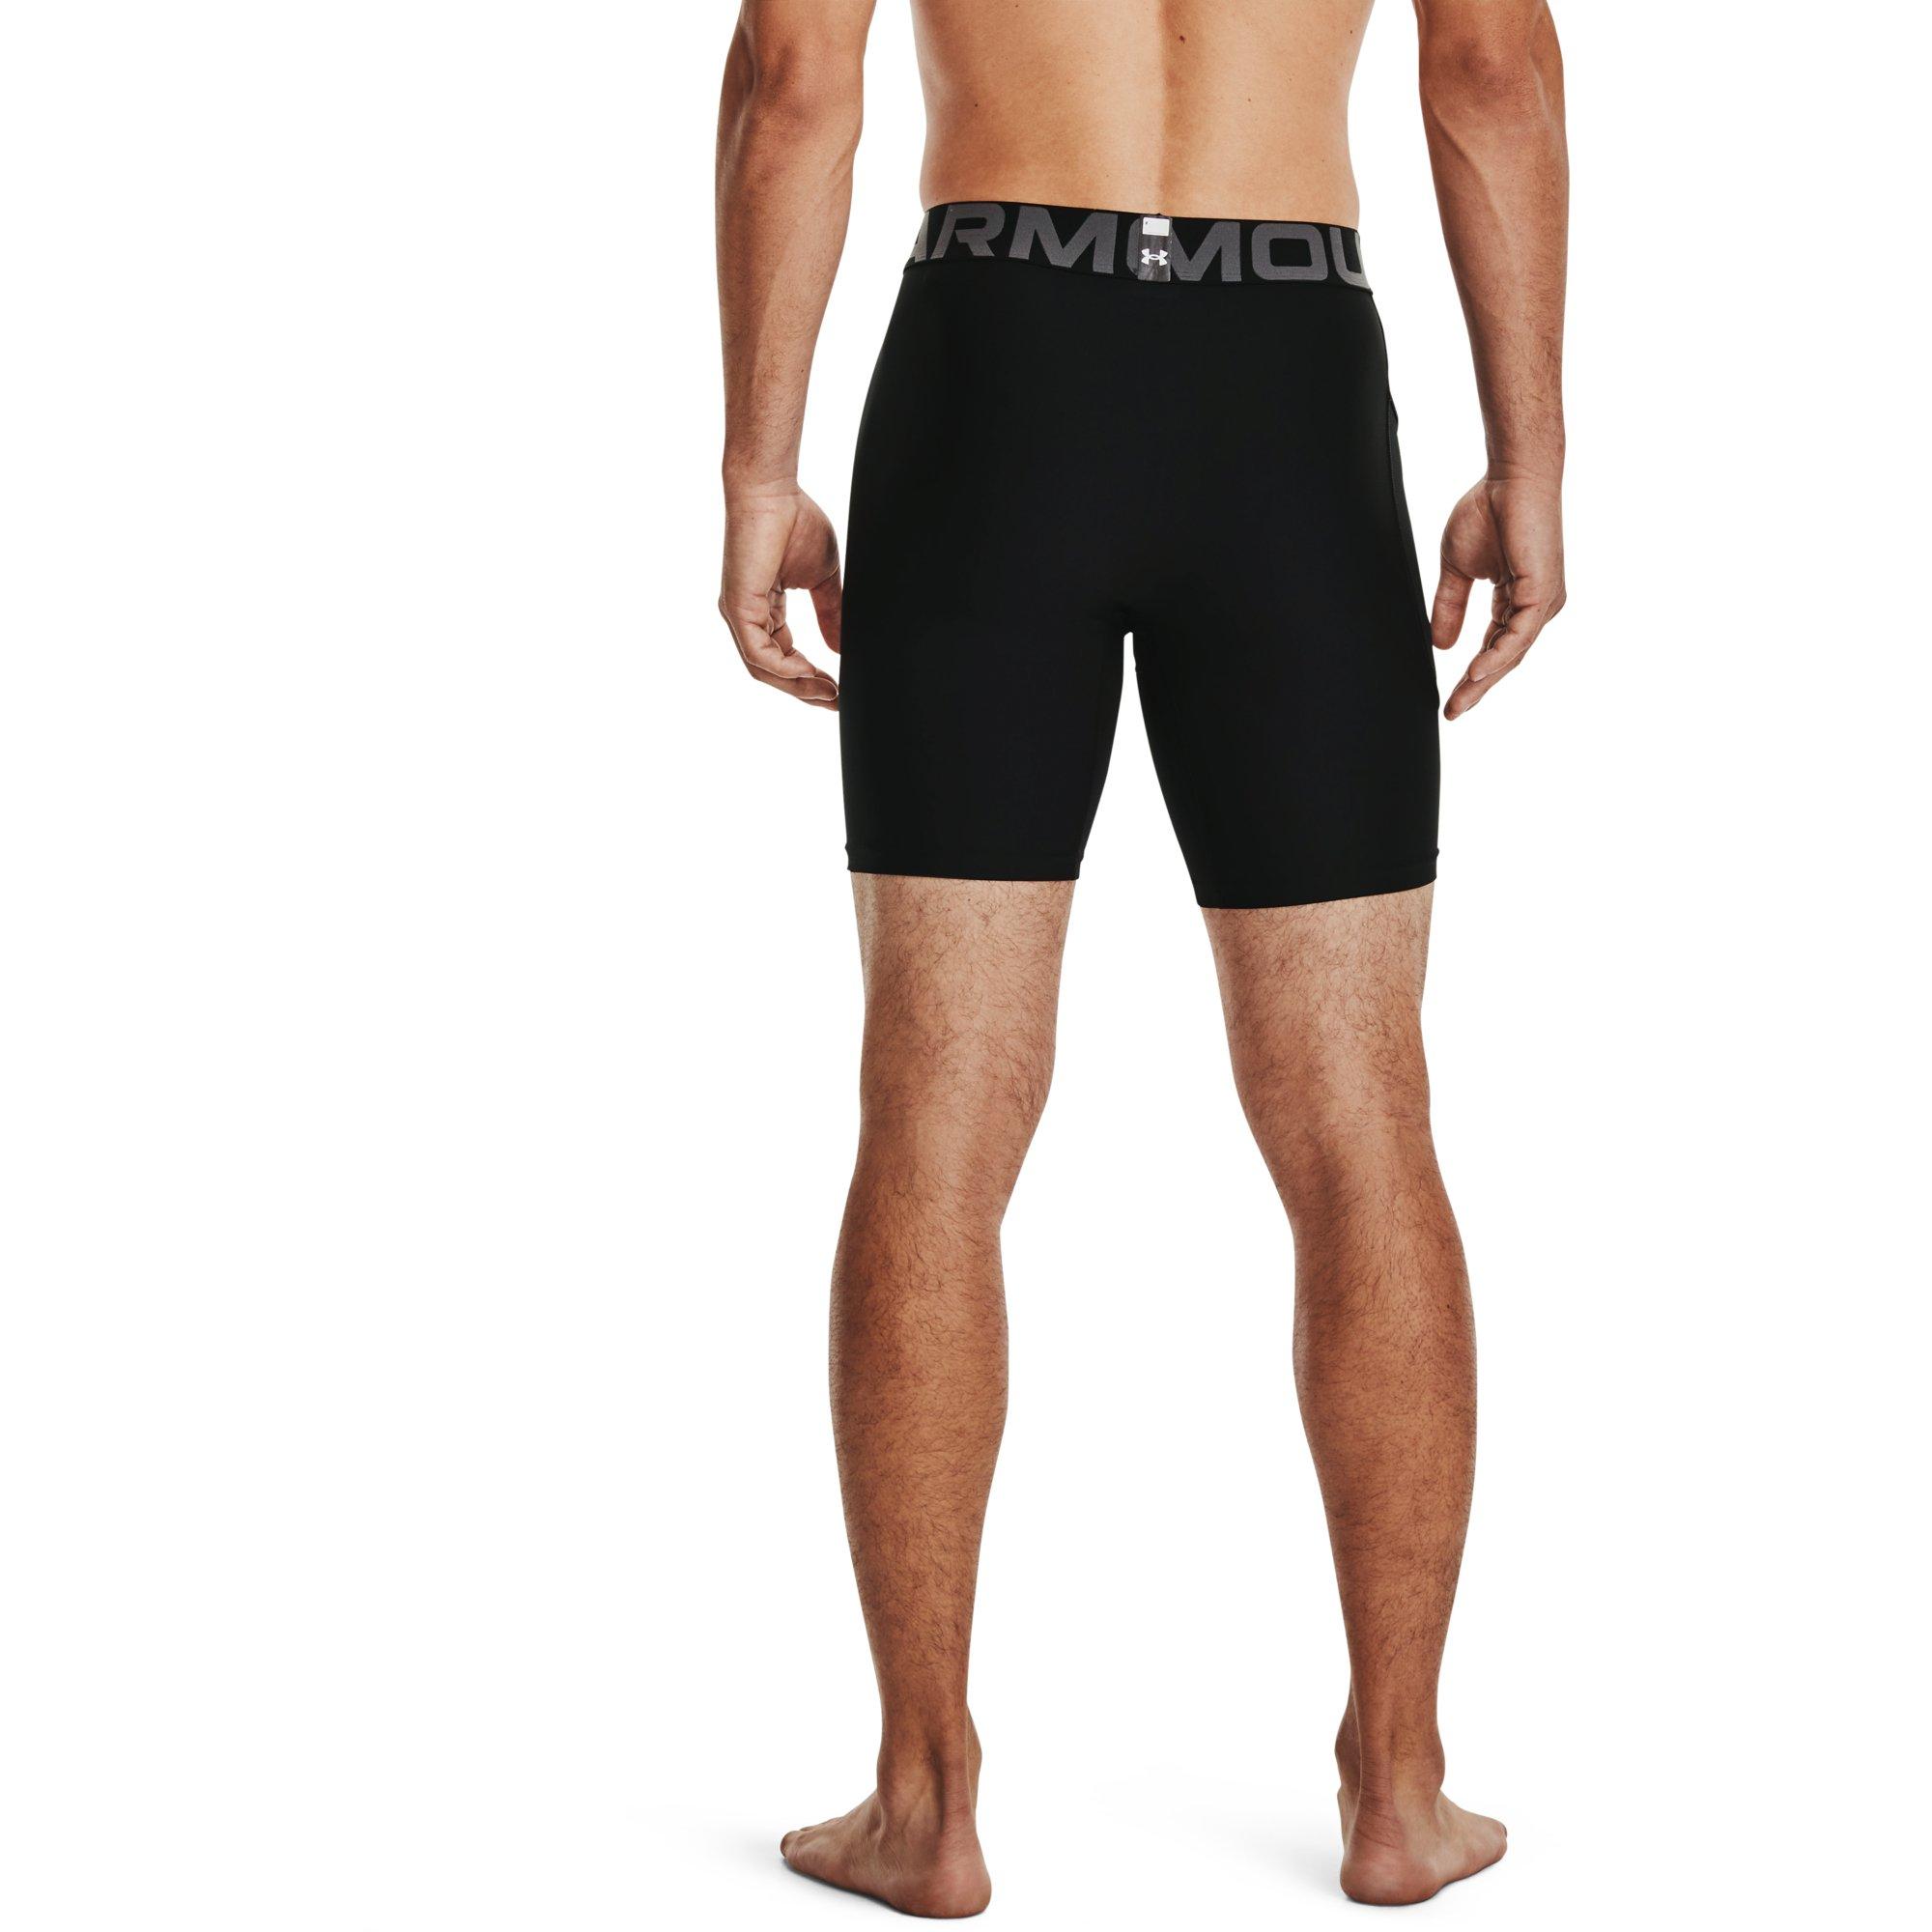 Under Armour Men's Underwear, Boxerbriefs & Compression Shorts - Hibbett